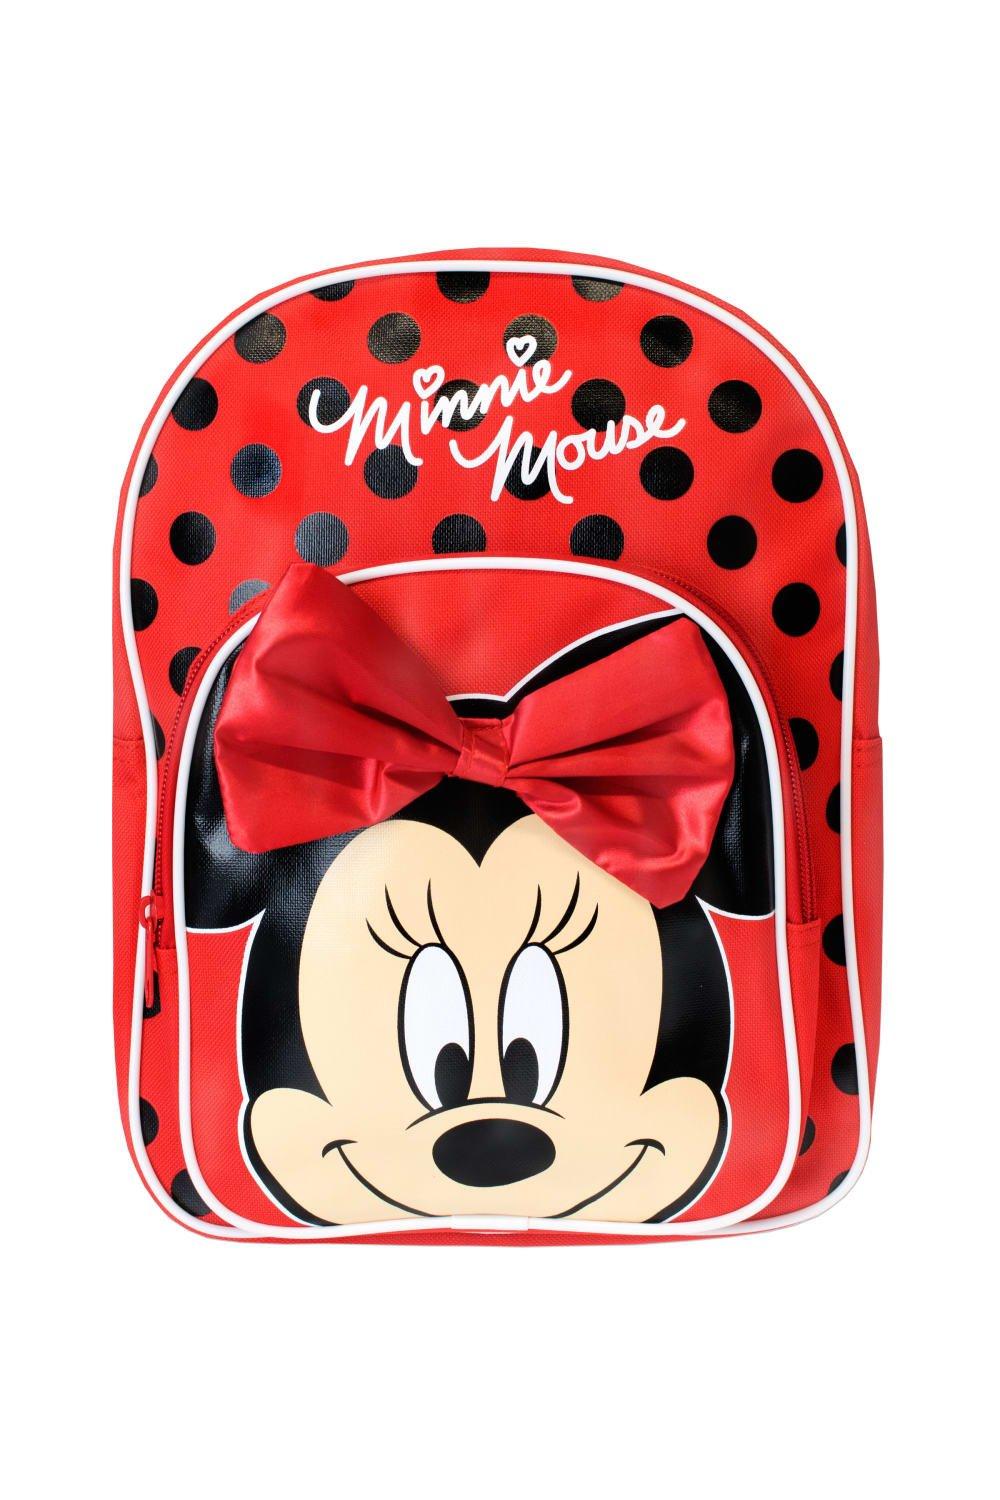 Детский рюкзак Минни Маус с 3D бантиком Disney, красный детский рюкзак с минни маус disney розовый